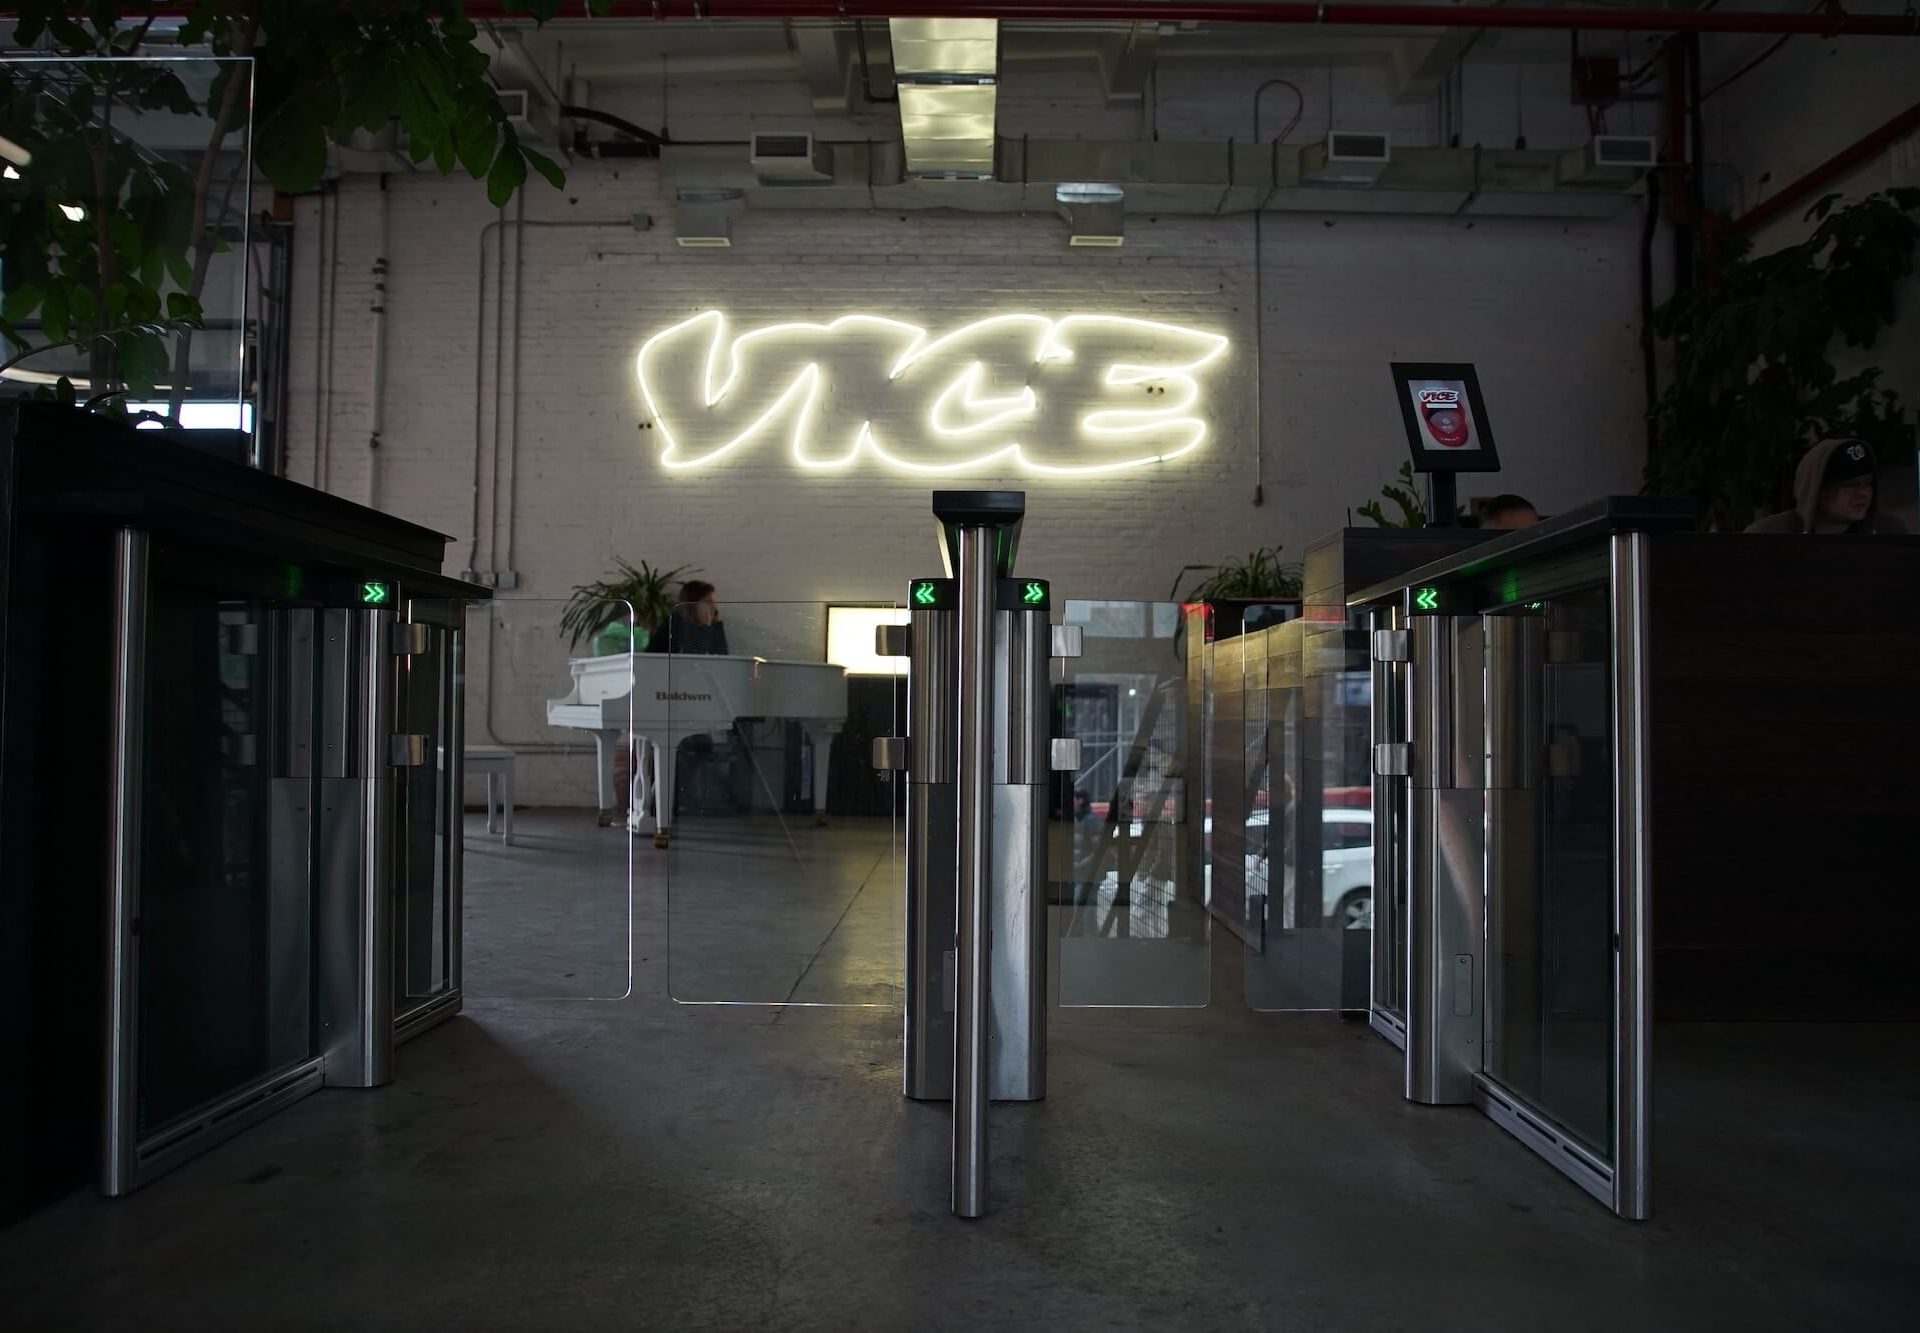 Vice Media cerrará su sitio principal y despedirá a cientos de empleados |  Informes de los medios